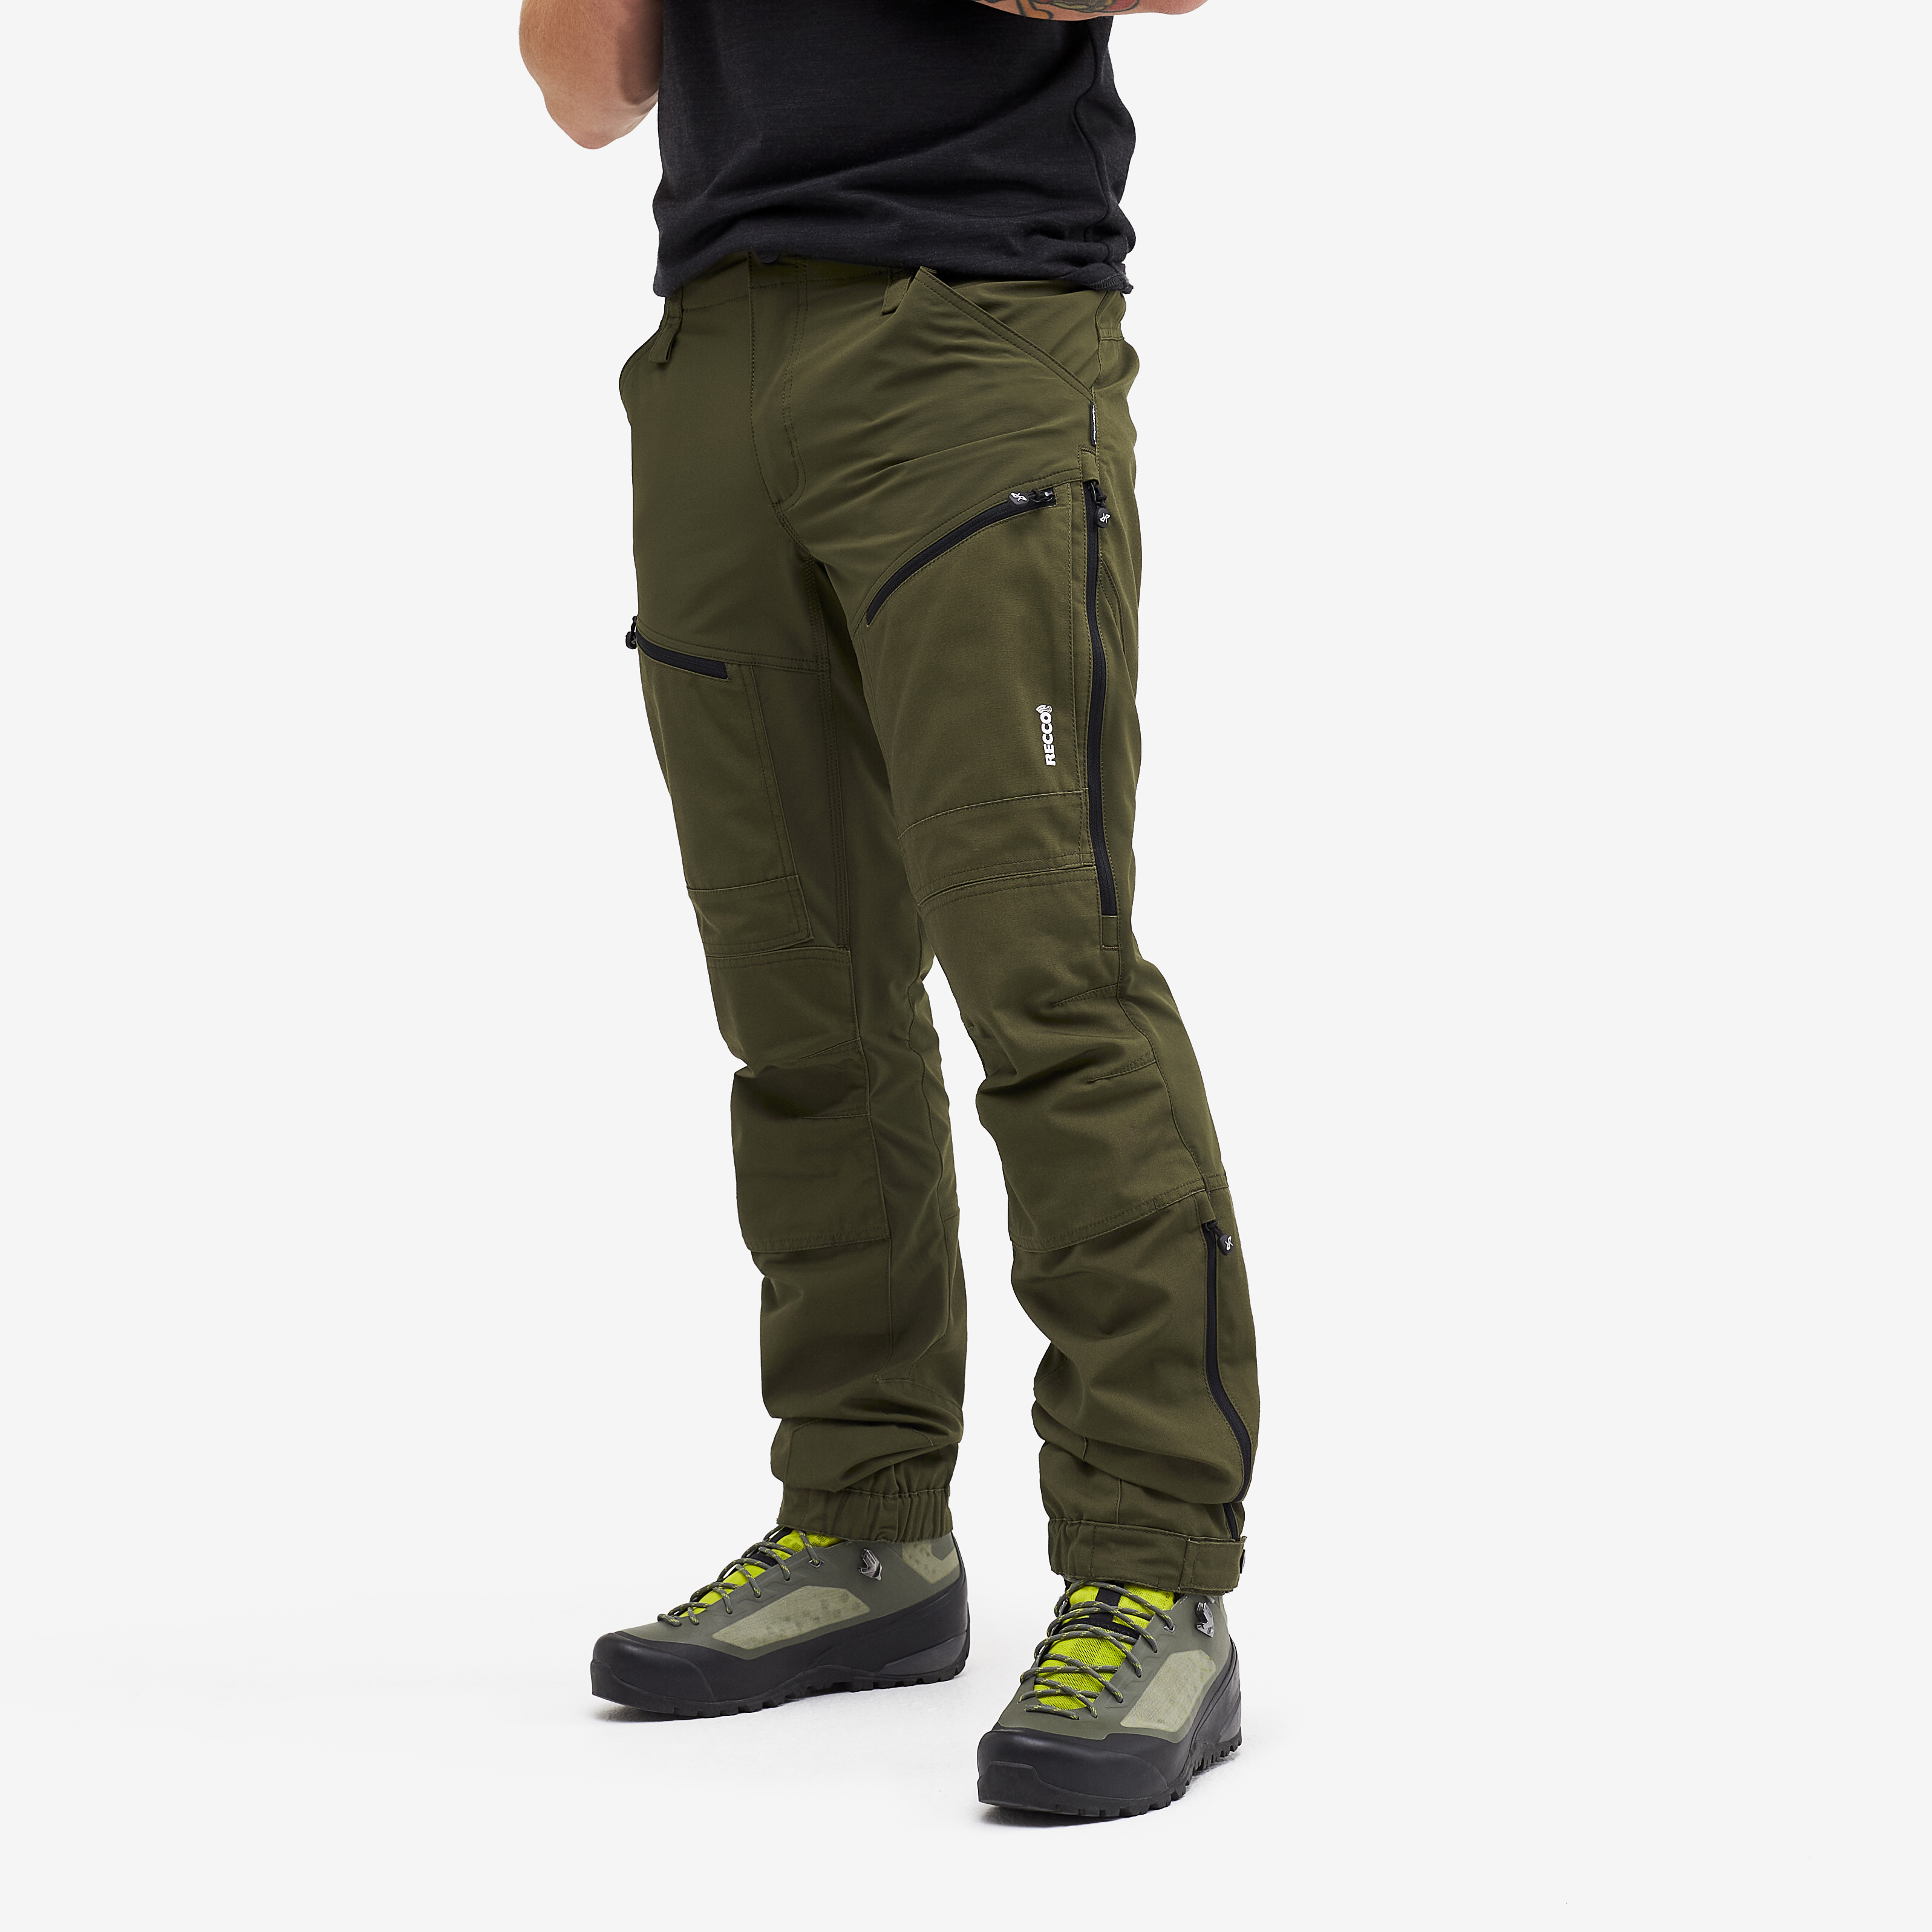 RVRC GP Pro Rescue spodnie trekkingowe męskie zielony